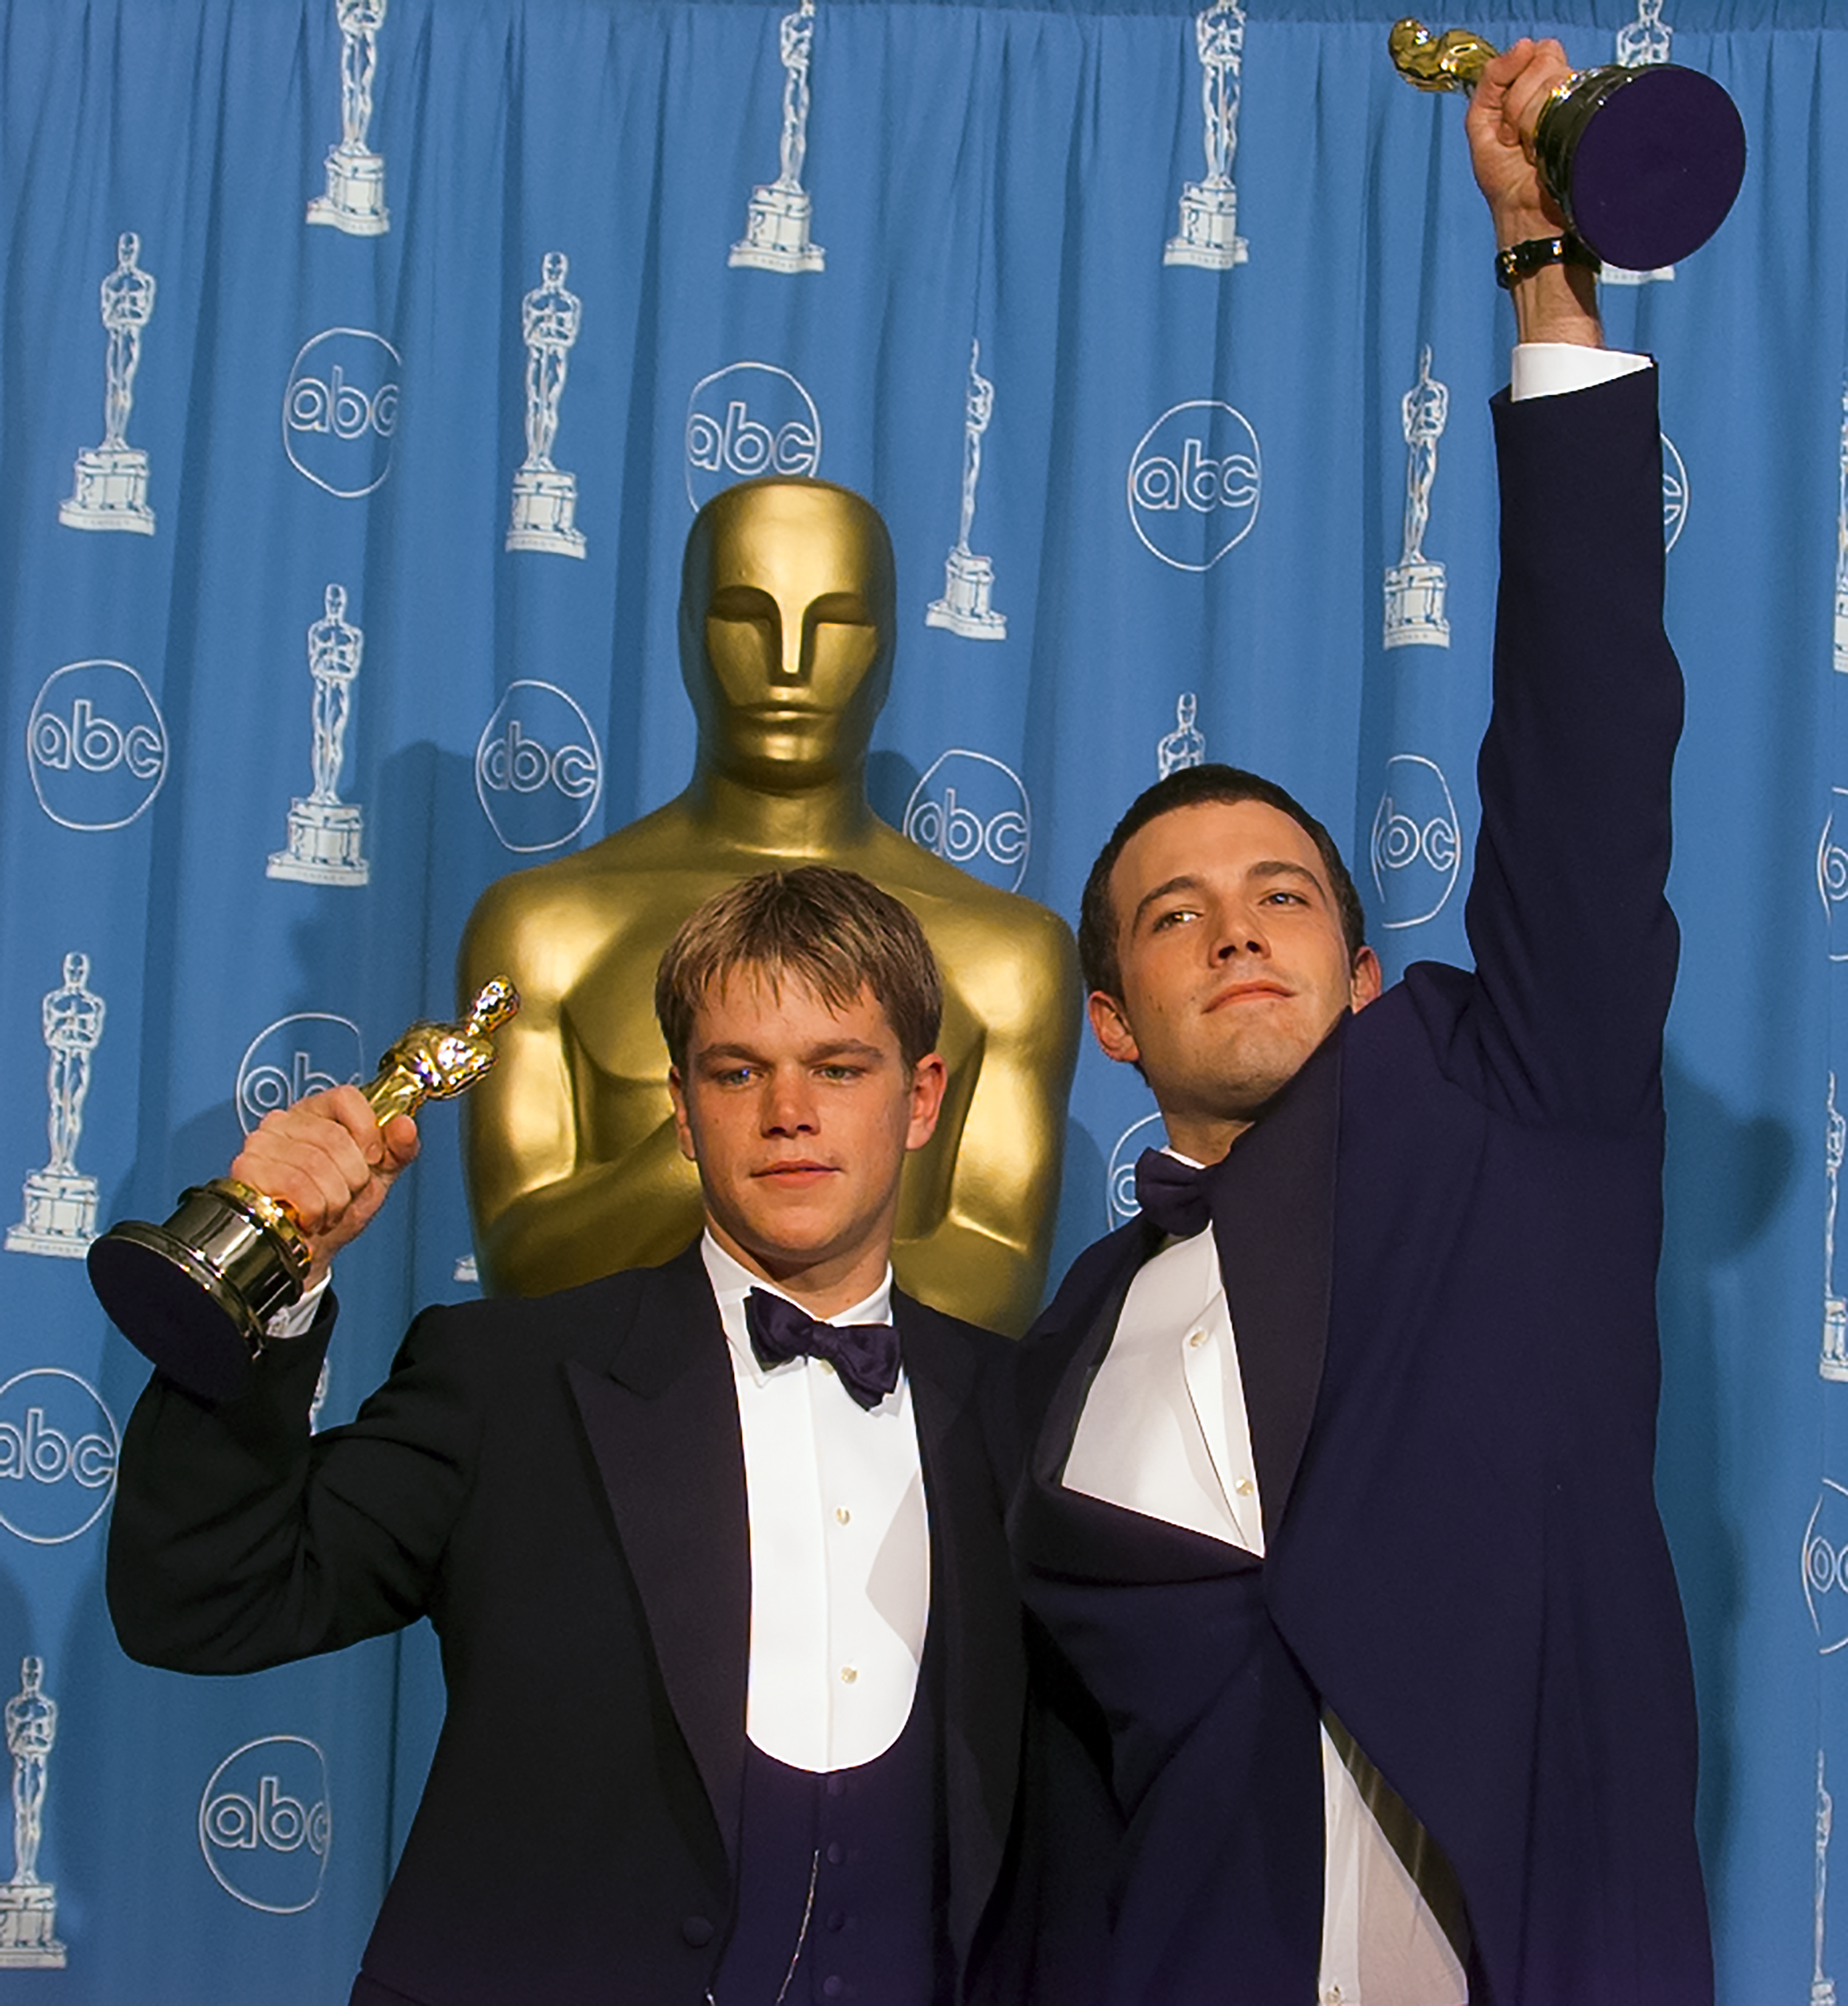 Matt and Ben holding their Oscars